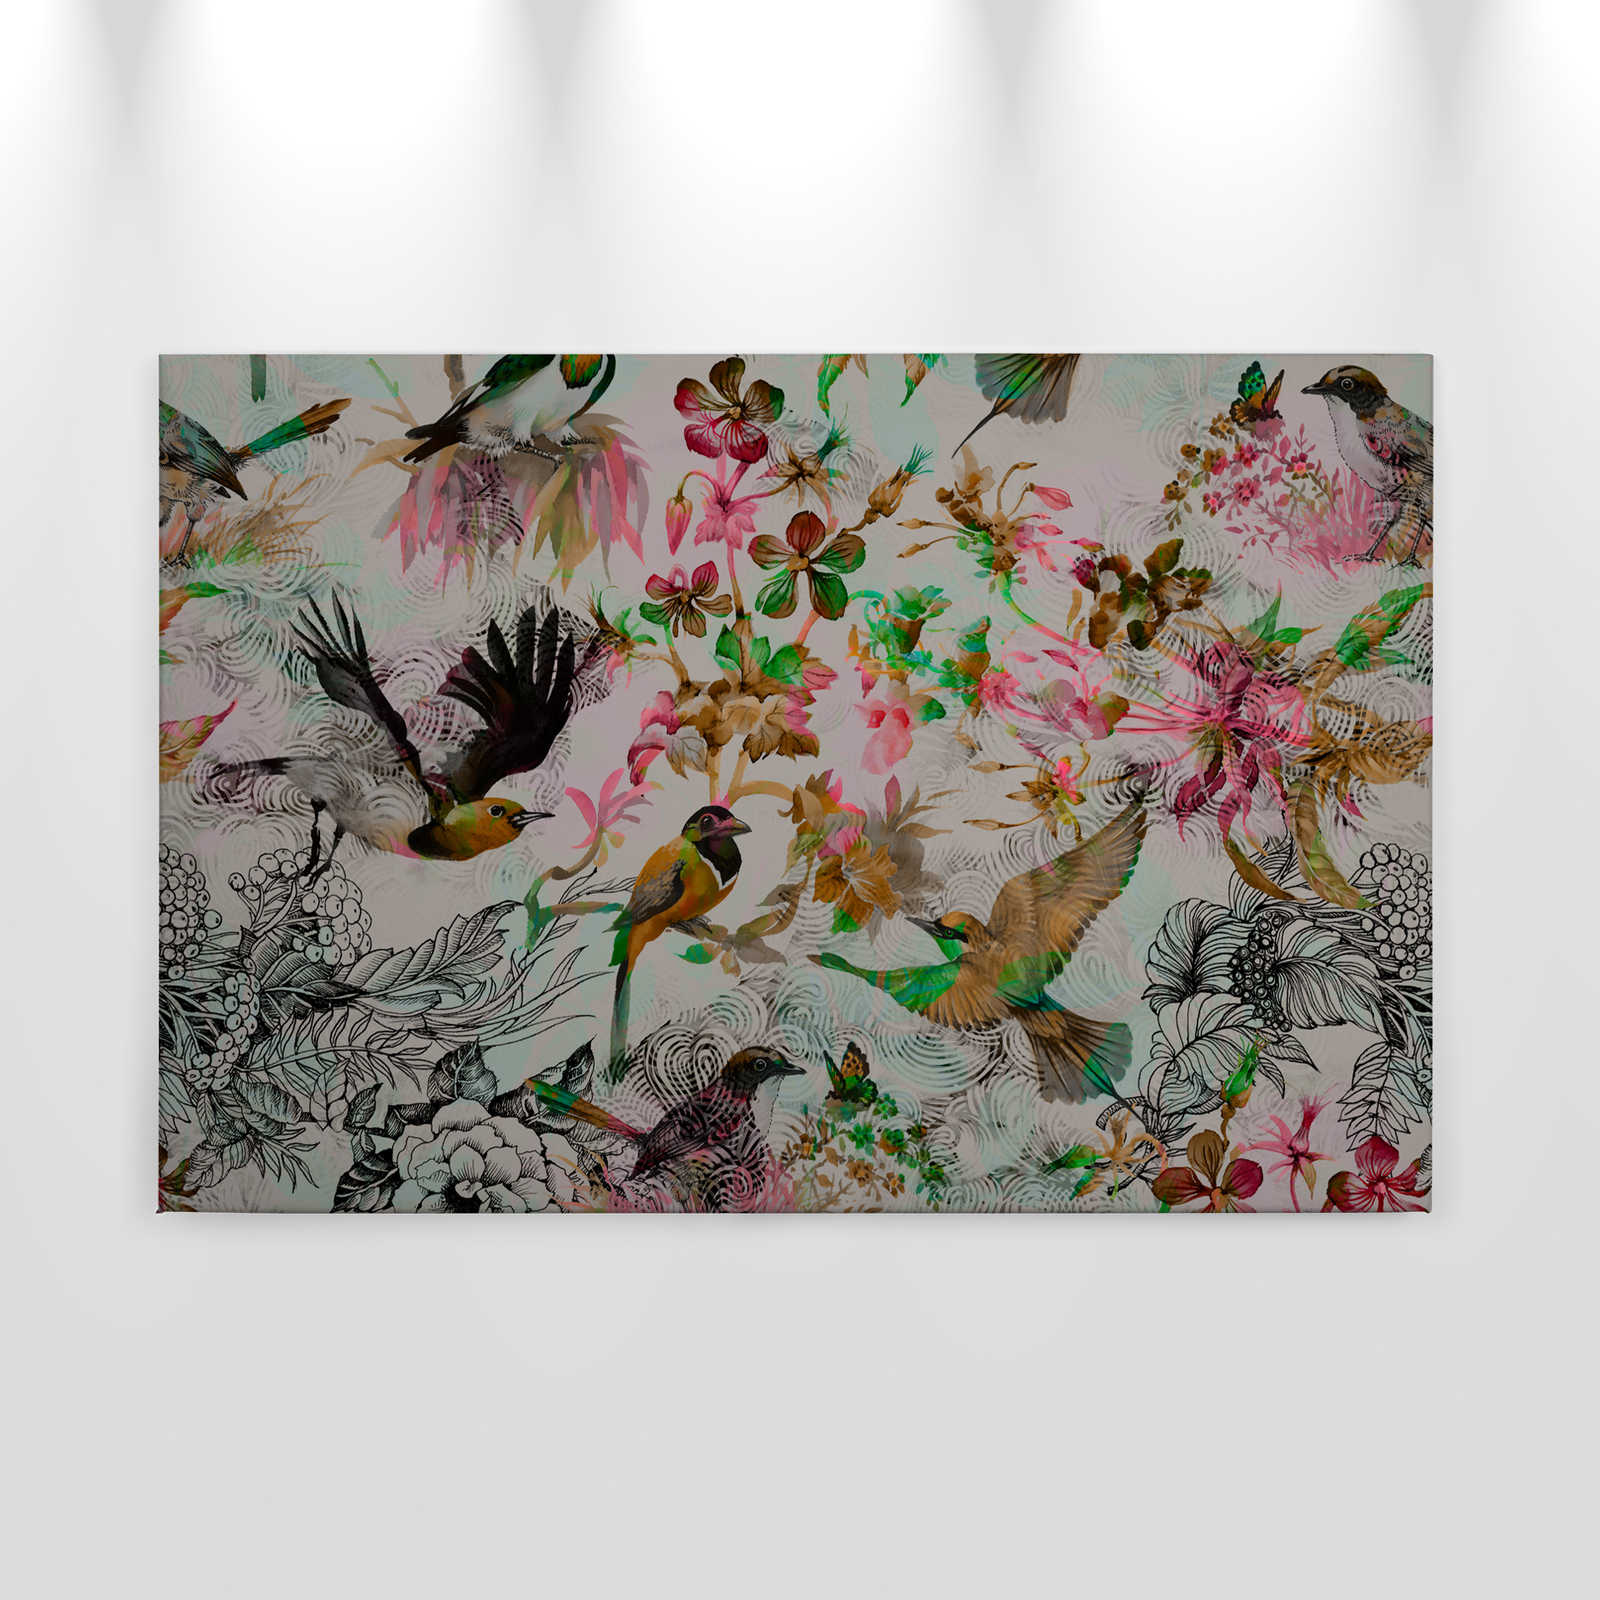             Lienzo Pájaros y Flores Estilo Collage - 0,90 m x 0,60 m
        